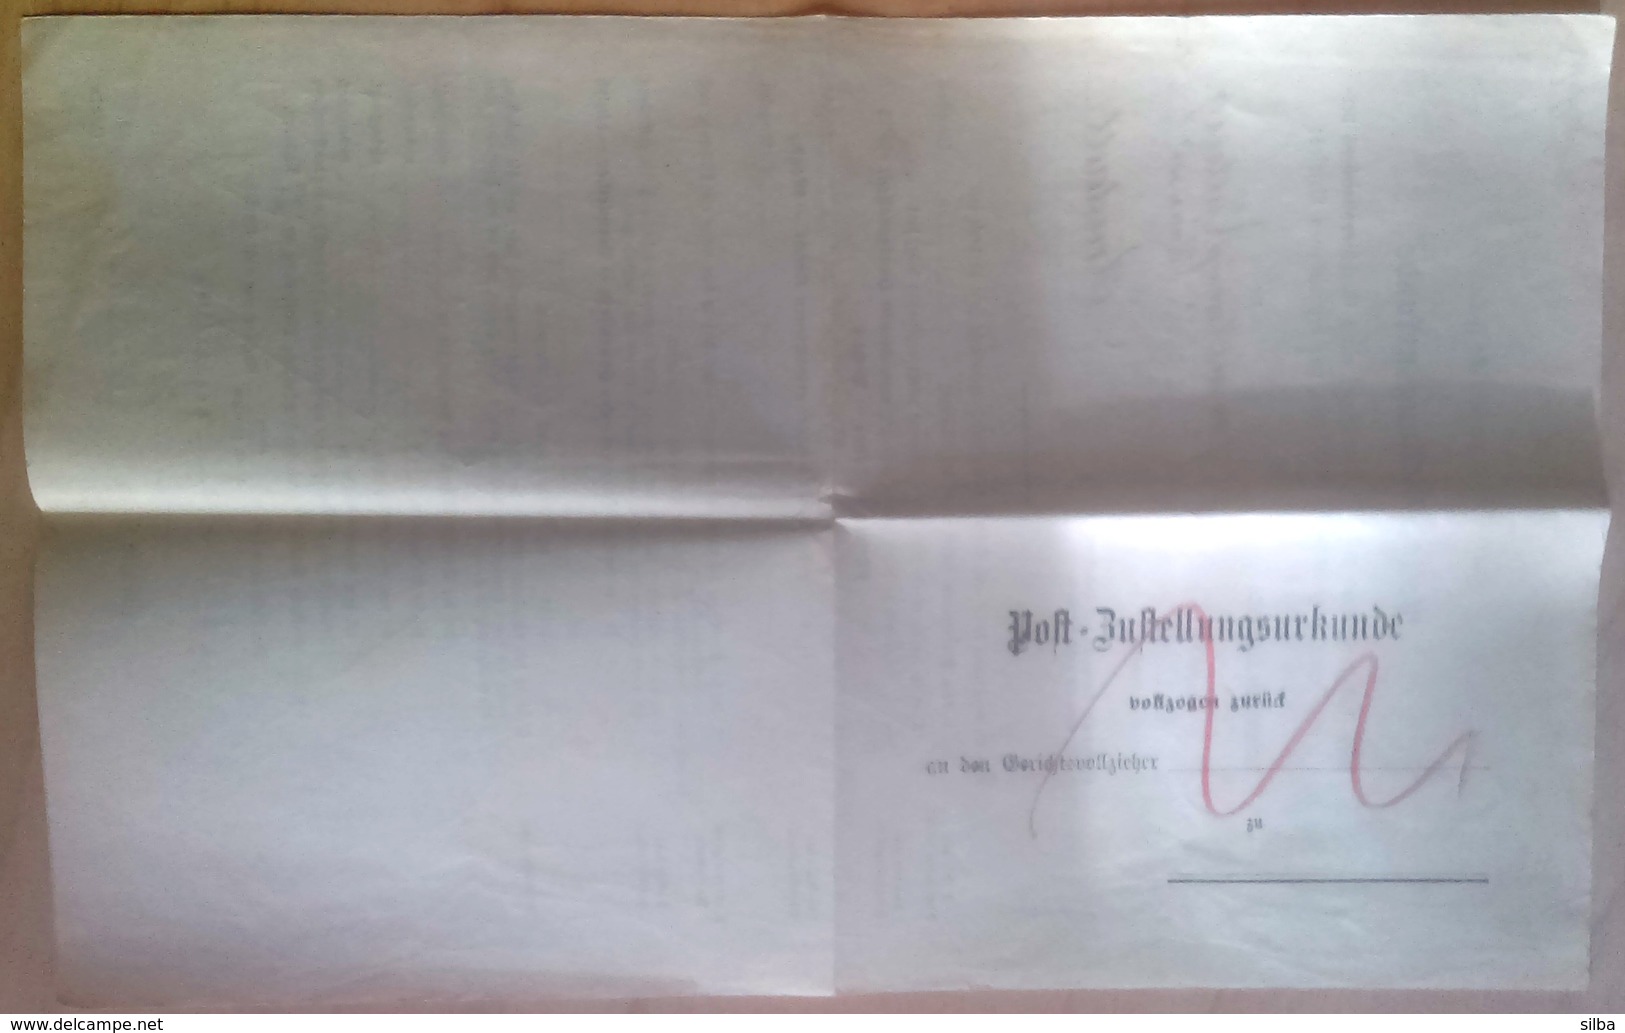 Germany Deutsches Reich Arnstadt 1895 / Post Bustellungsurkunde / Post Delivery Document - 1800 – 1899